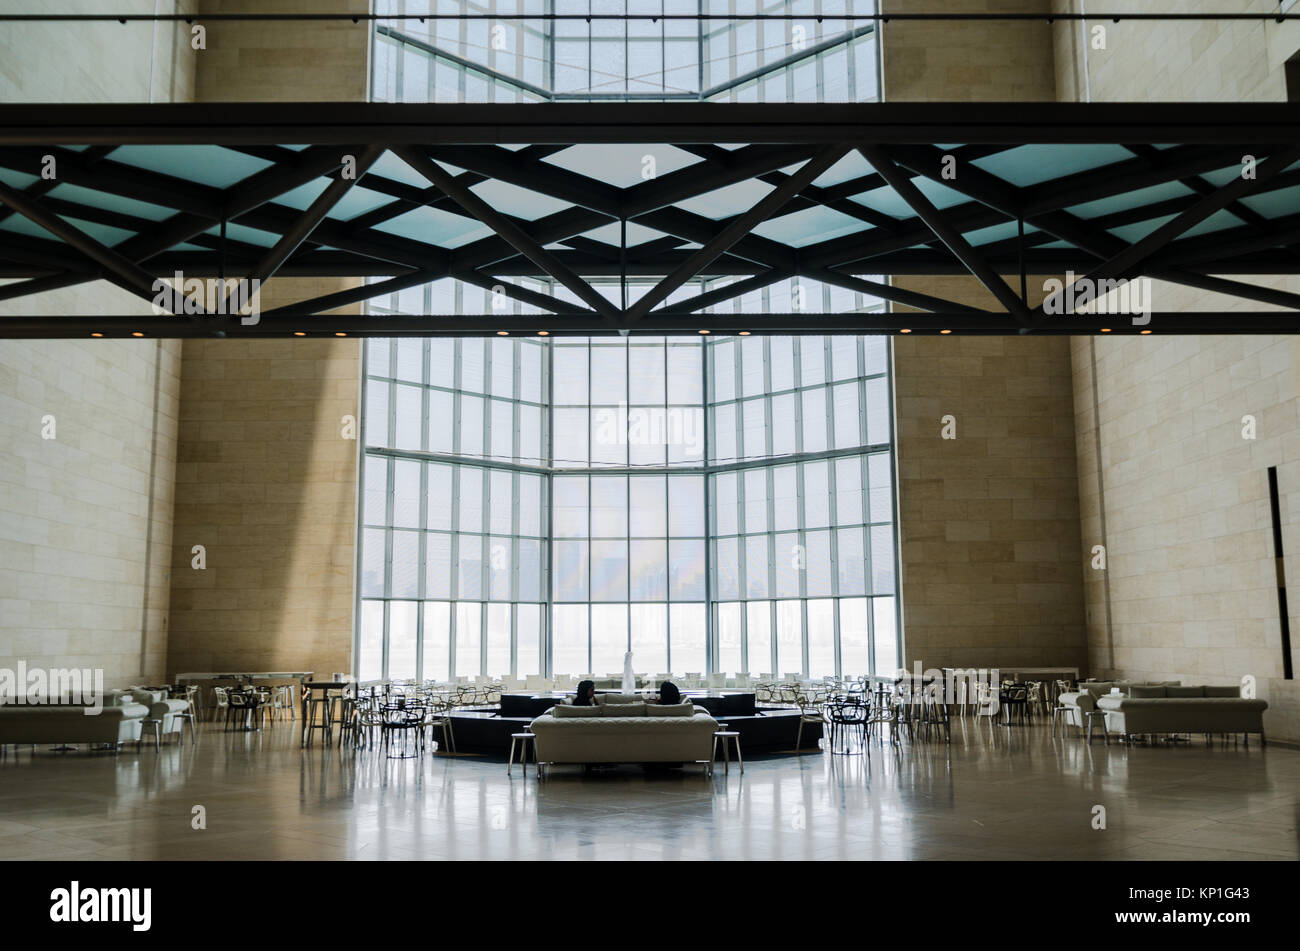 Il Museo di Arte Islamica, Doha (Qatar). Luglio 2017. Ristorante, bar e nella finestra principale. Il museo è di Doha più pregiata icona architettonica, progettato da Foto Stock